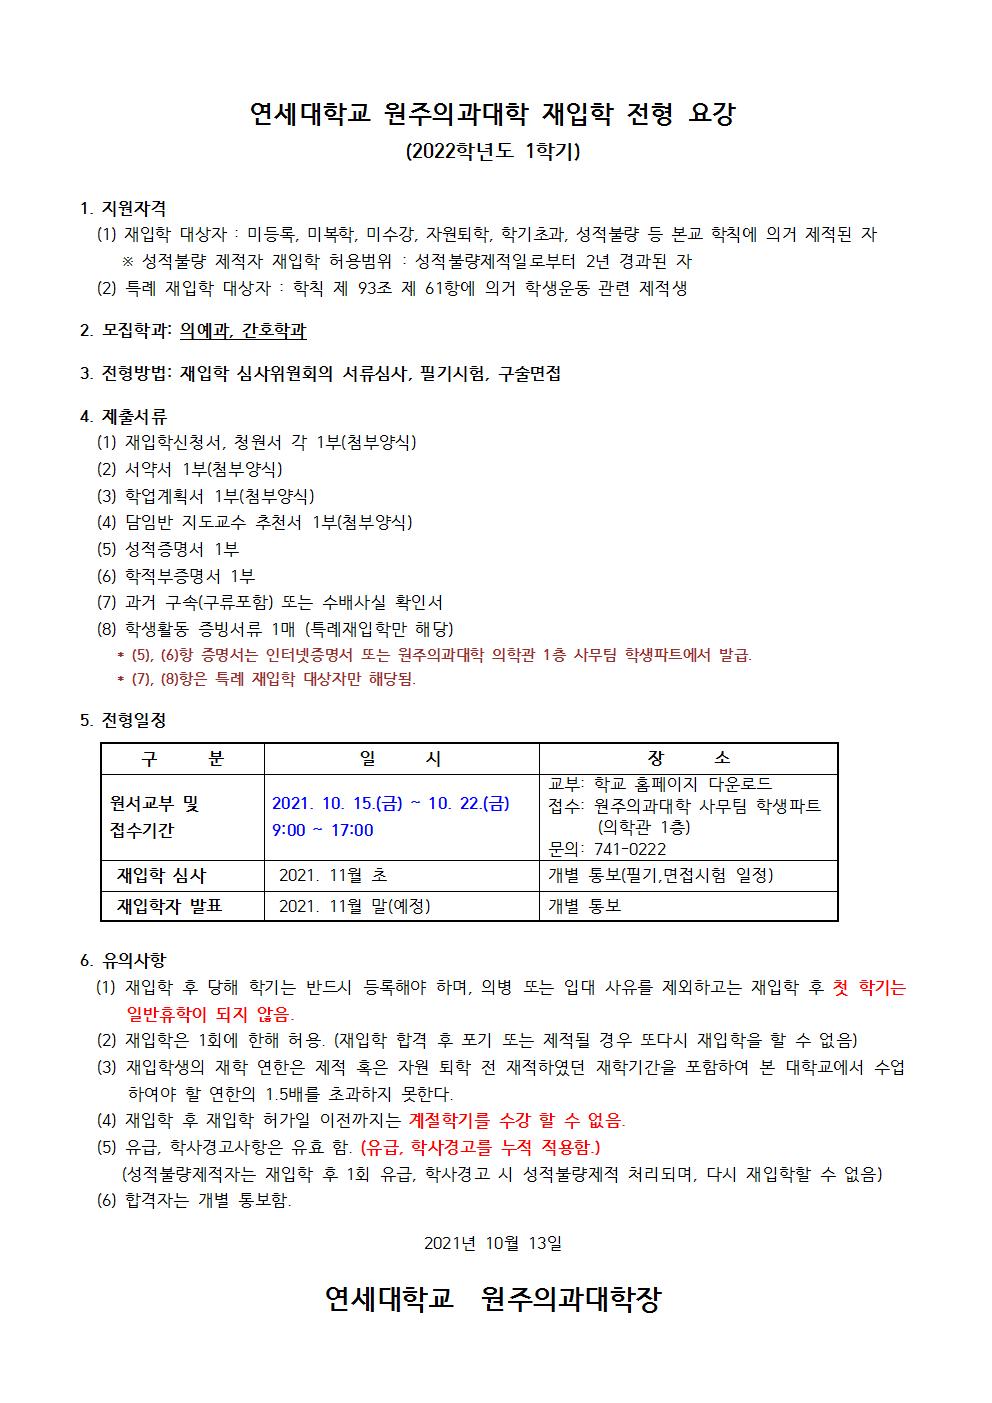 1. 학교공지용_2022-1학기 재입학 안내001.jpg